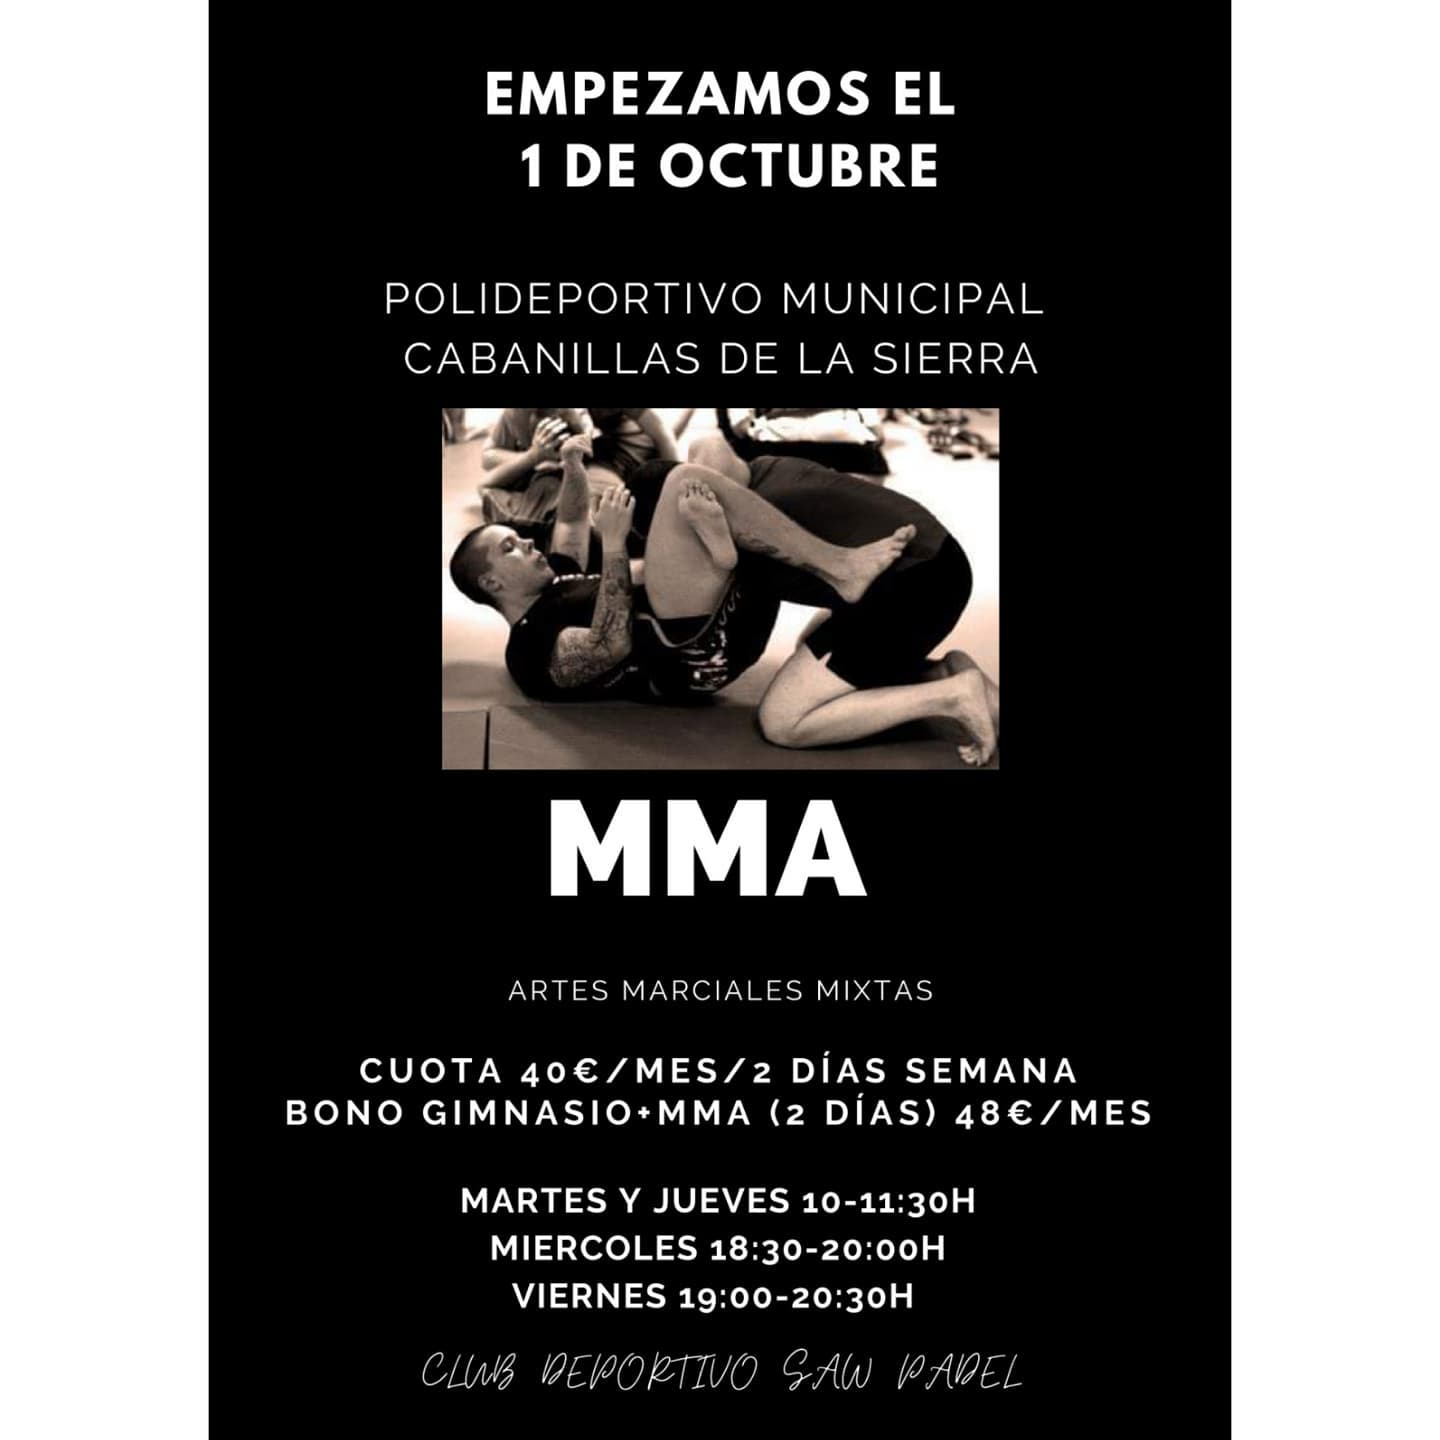 MMA artes marciales mixtas Cabanillas de la Sierra